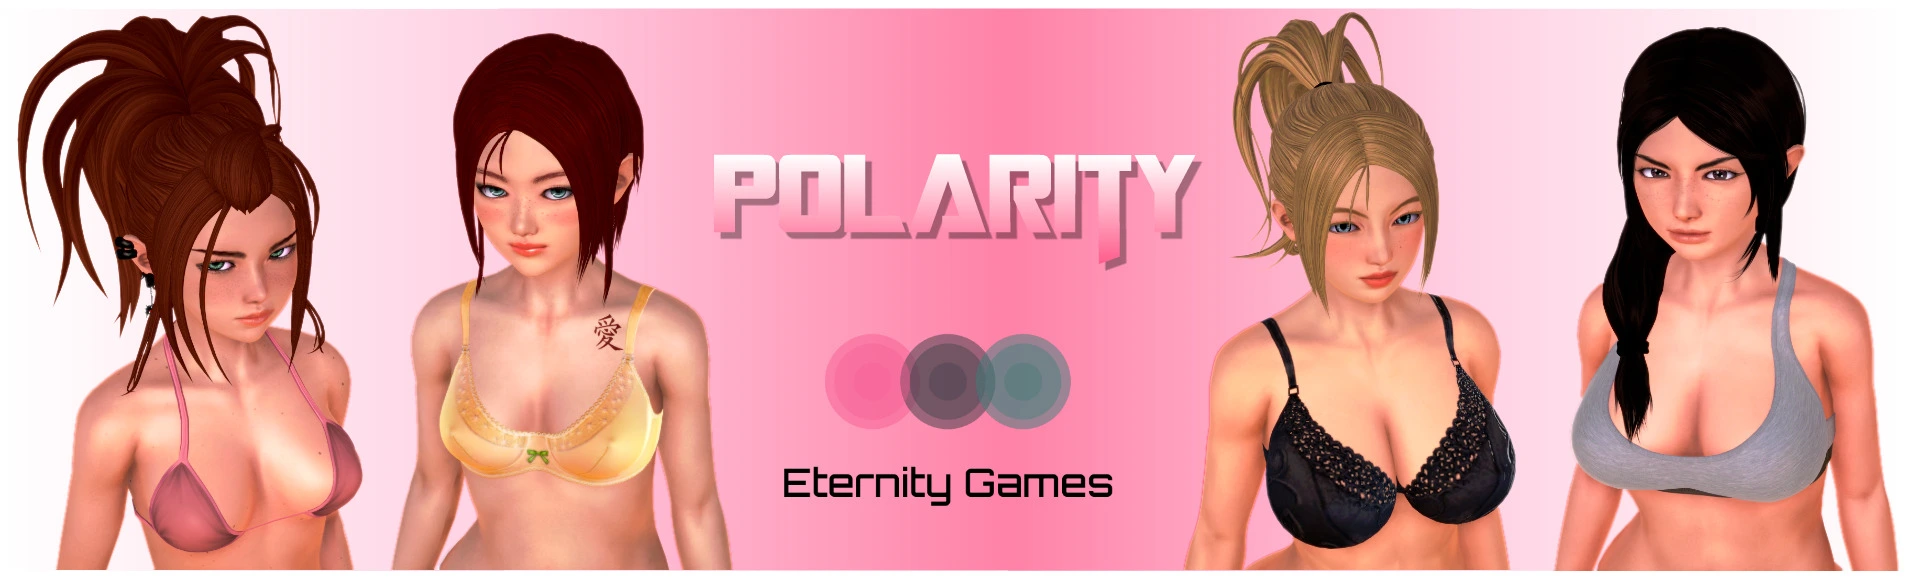 Polarity [v0.3.1] main image